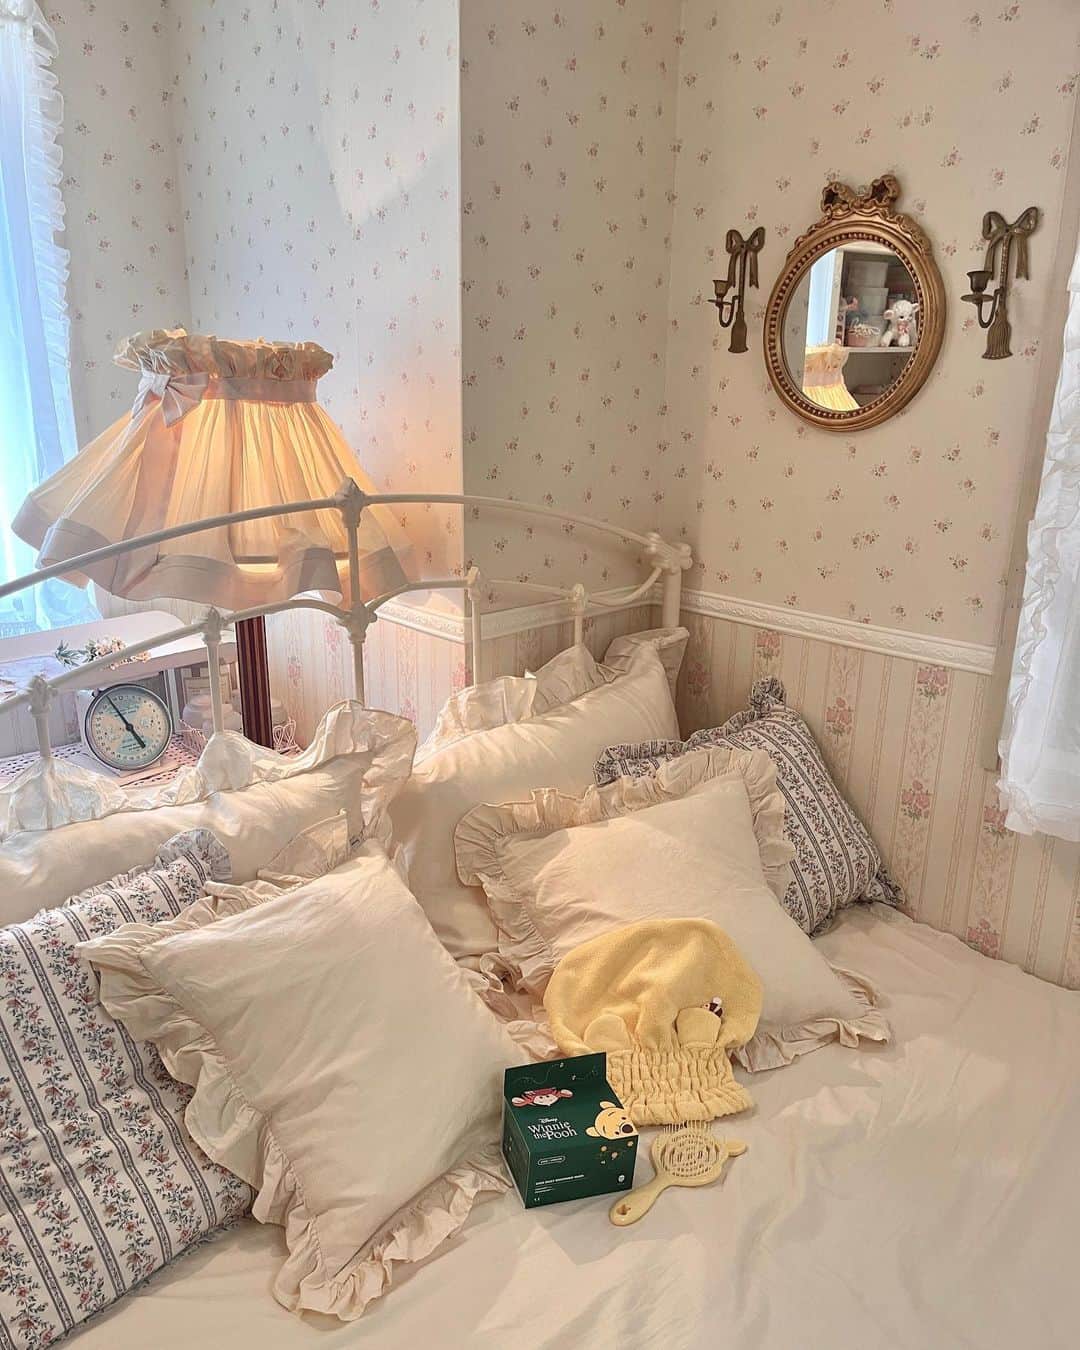 織田エリカのインスタグラム：「𝕡𝕠𝕠𝕙 𝕡𝕒𝕔𝕜🐻🍯  𓂃  プーさんとコラボのシカパック💚 普段から愛用してるパックだから パッケージ可愛くなって嬉しい🐻  クシもプーさんの形しててナイトケアが テンション上がる💛  ©︎ Disney © Disney. Based on the "Winnie the Pooh" works by A.A. Milne and E.H. Shepard.  𓂃  #gifted #myroom #room #interior #vintage #vintagegirl #antique #shabbychic #cute #frenchgirl #girly #lauraashley #ディズニーストアLOVER #ディズニーストア #ショップディズニー #プーさん #マイルーム #インテリア #アンティーク #ヴィンテージ #ルーム #シャビーシック #ベッドルーム #淡色女子 #かわいい #お部屋紹介 #ルームツアー #フレンチガーリー #ヴィンテージガーリー #ヴィンテージライク」